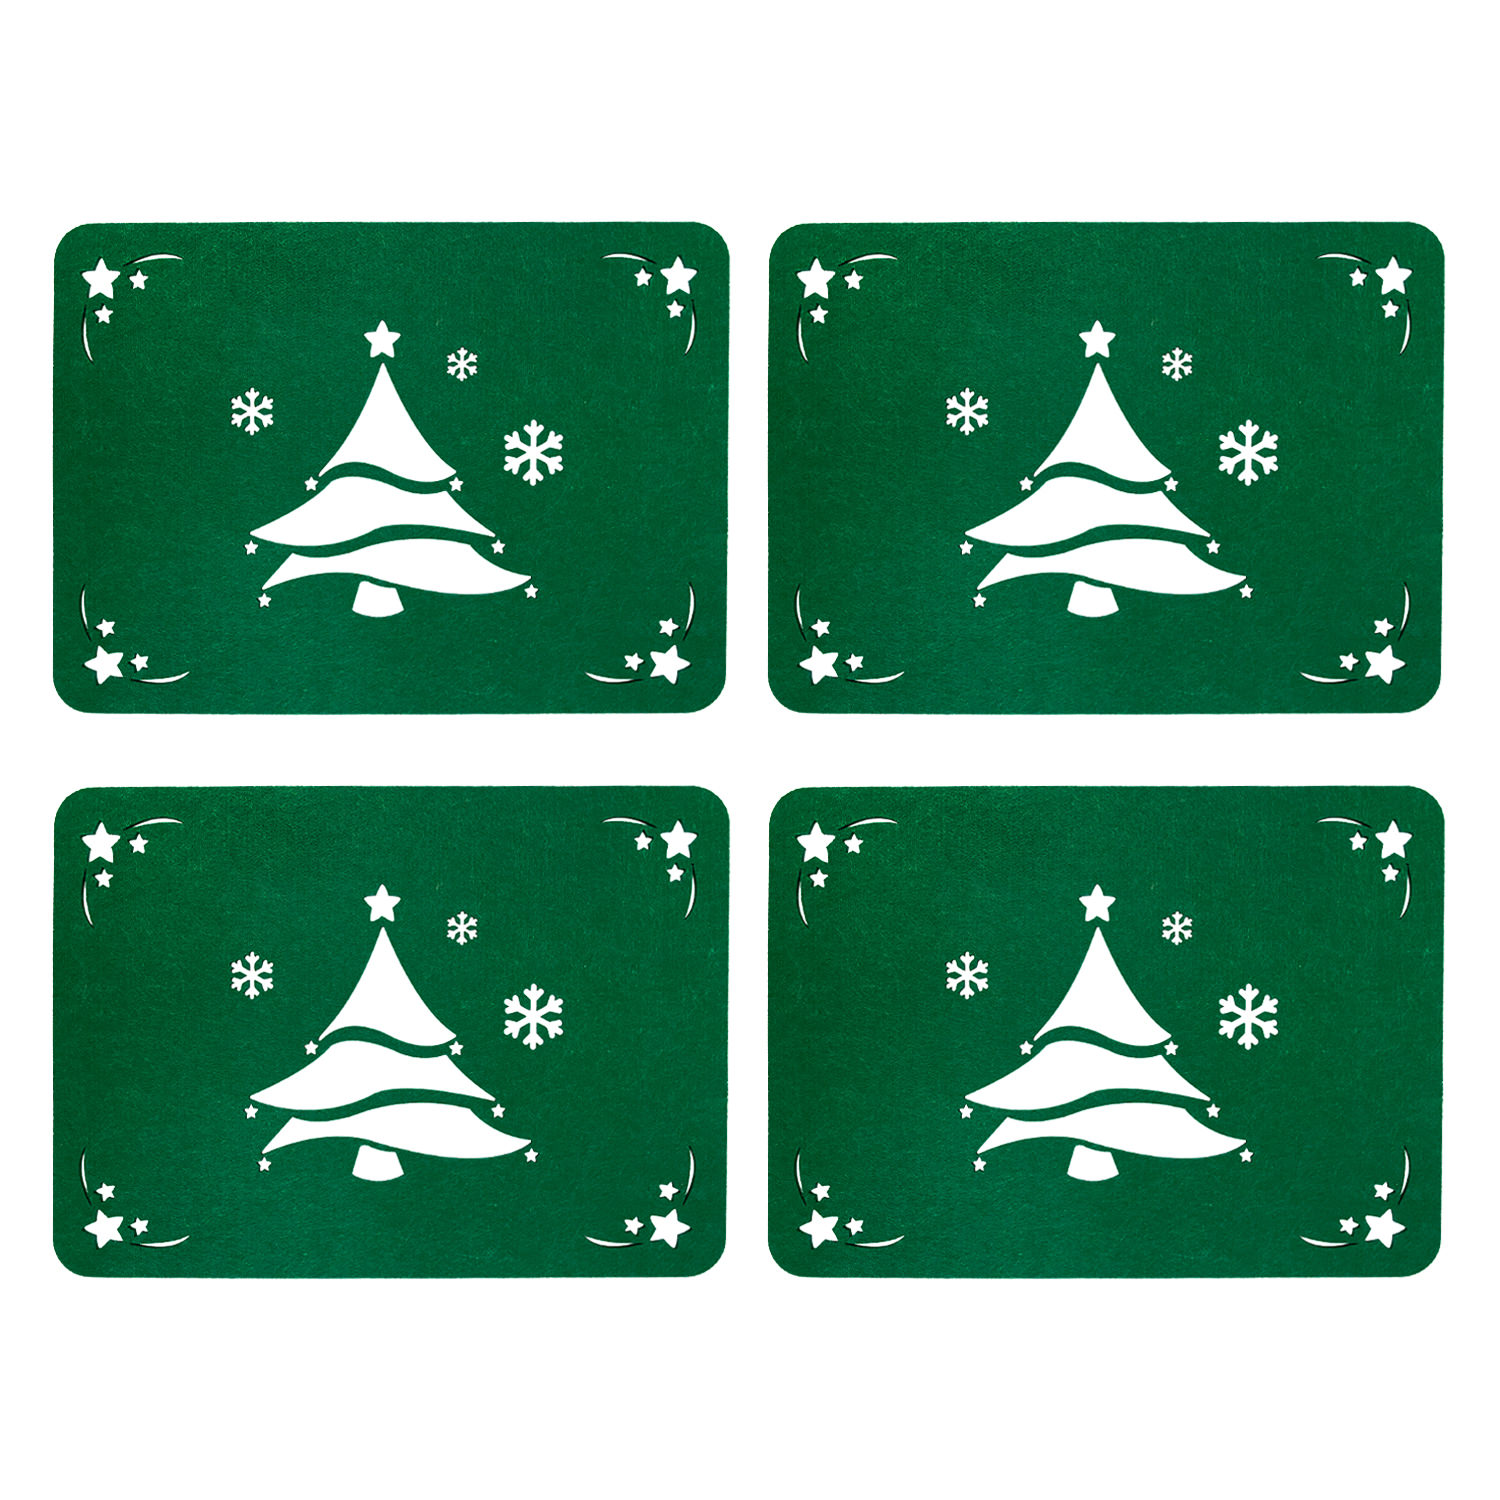 4 Filz Platzmatten - als Tannenbaum Weihnachtsdeko Weihnachtsbaum Tischdeko Untersetzer grün